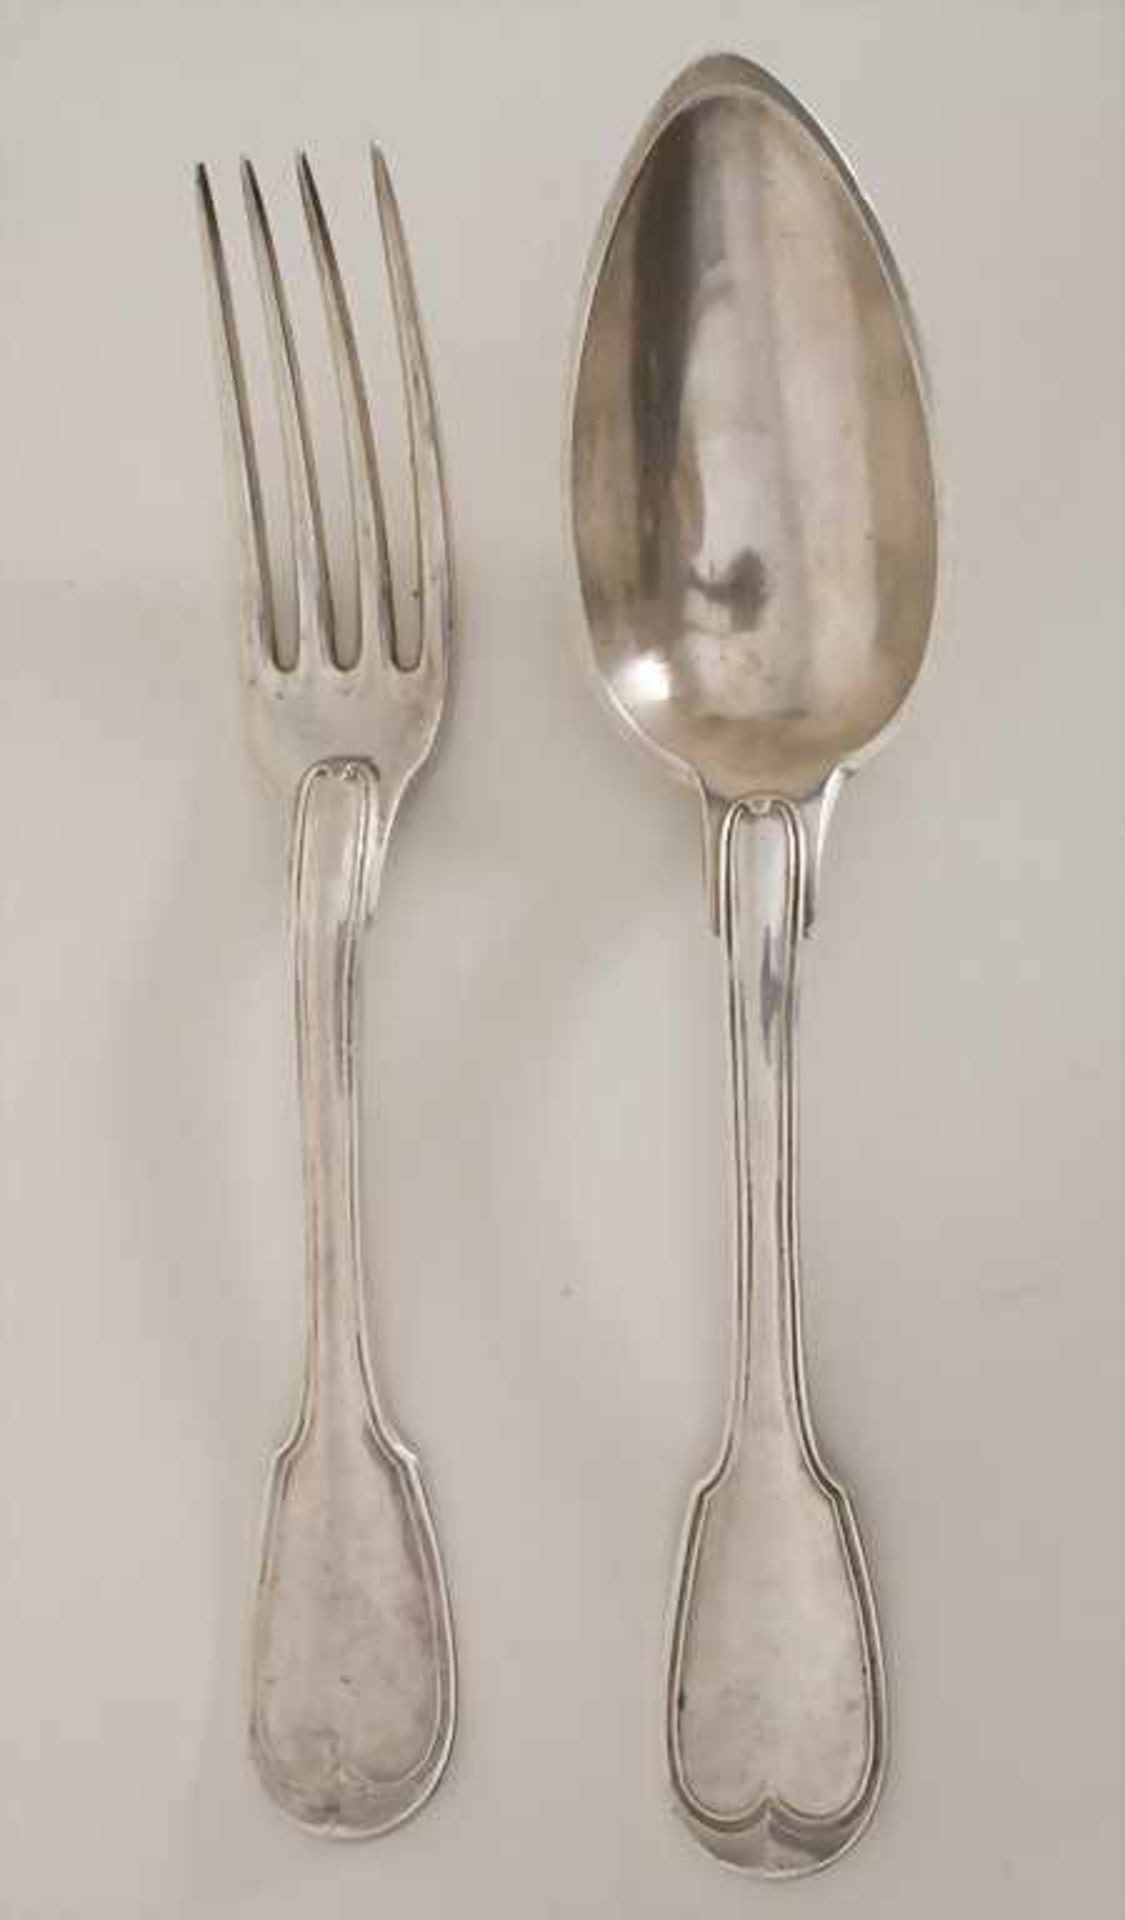 Restbesteck / 8 pieces of silver cutlery, Paris, um 1800 - Bild 4 aus 6